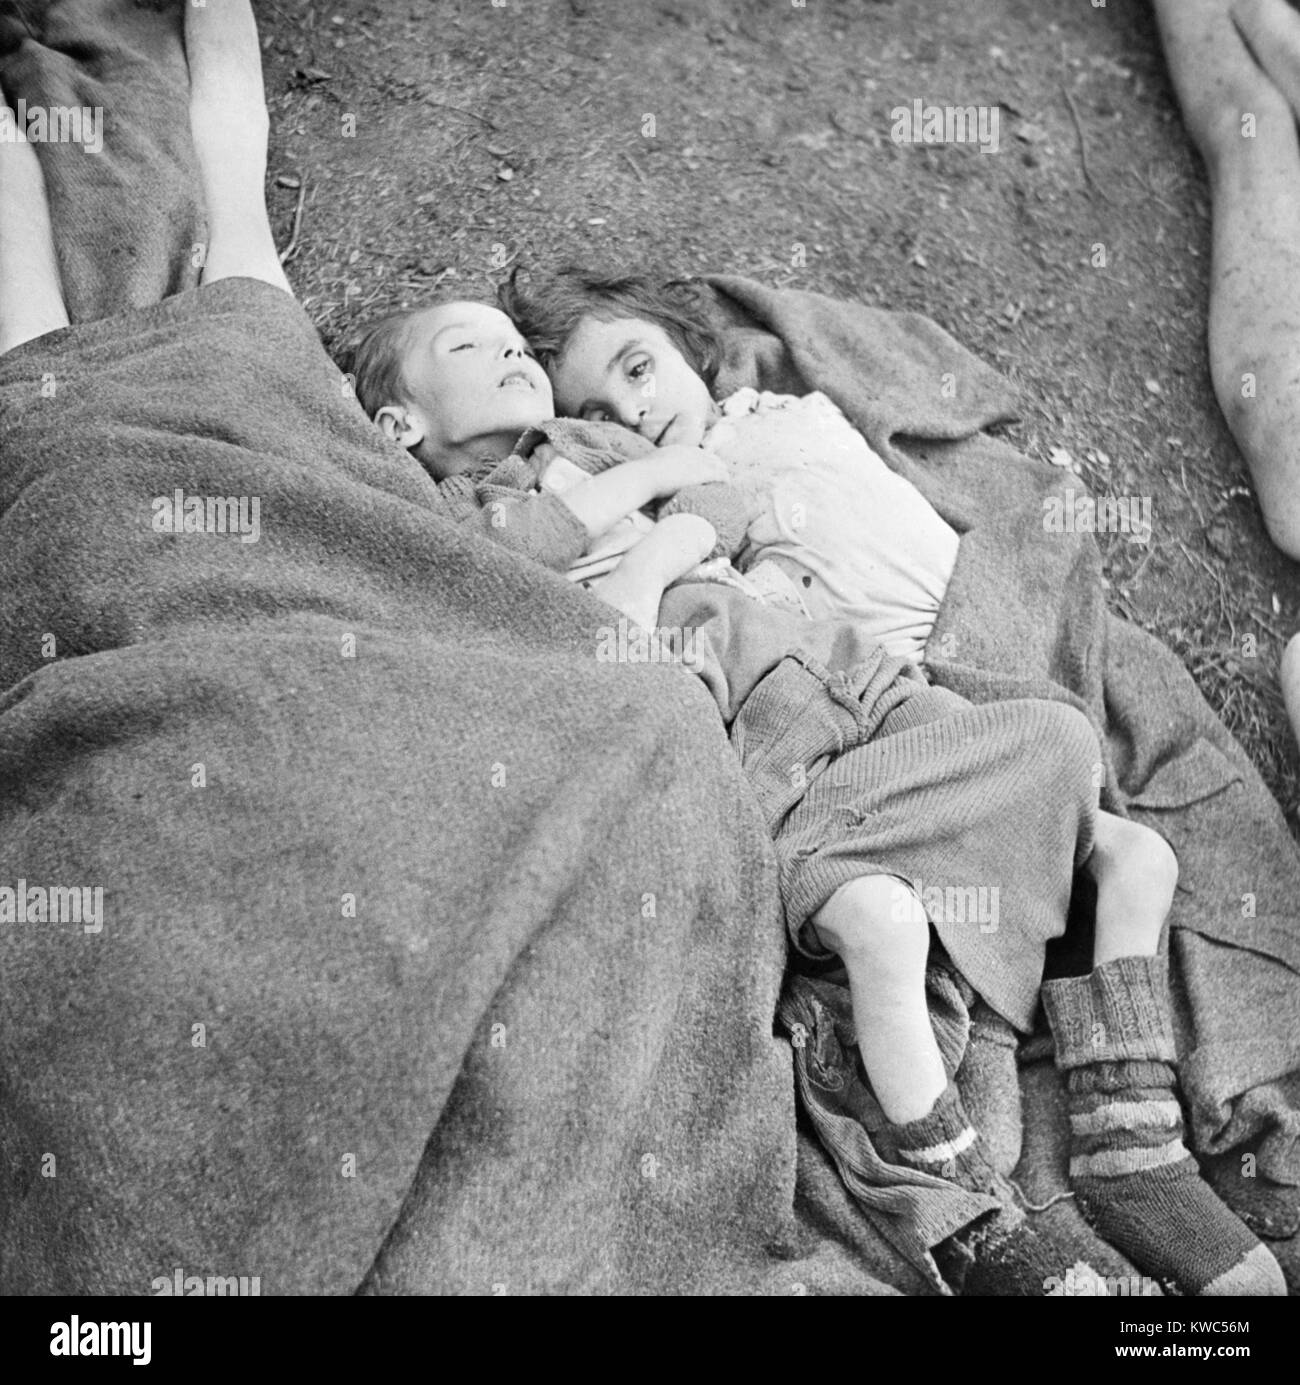 Deux jeunes enfants qui sont morts de faim dans le camp de concentration de Belsen allemande nazie. Avril 1945, la Première Guerre mondiale (BSLOC 2015 2 13 9) Banque D'Images